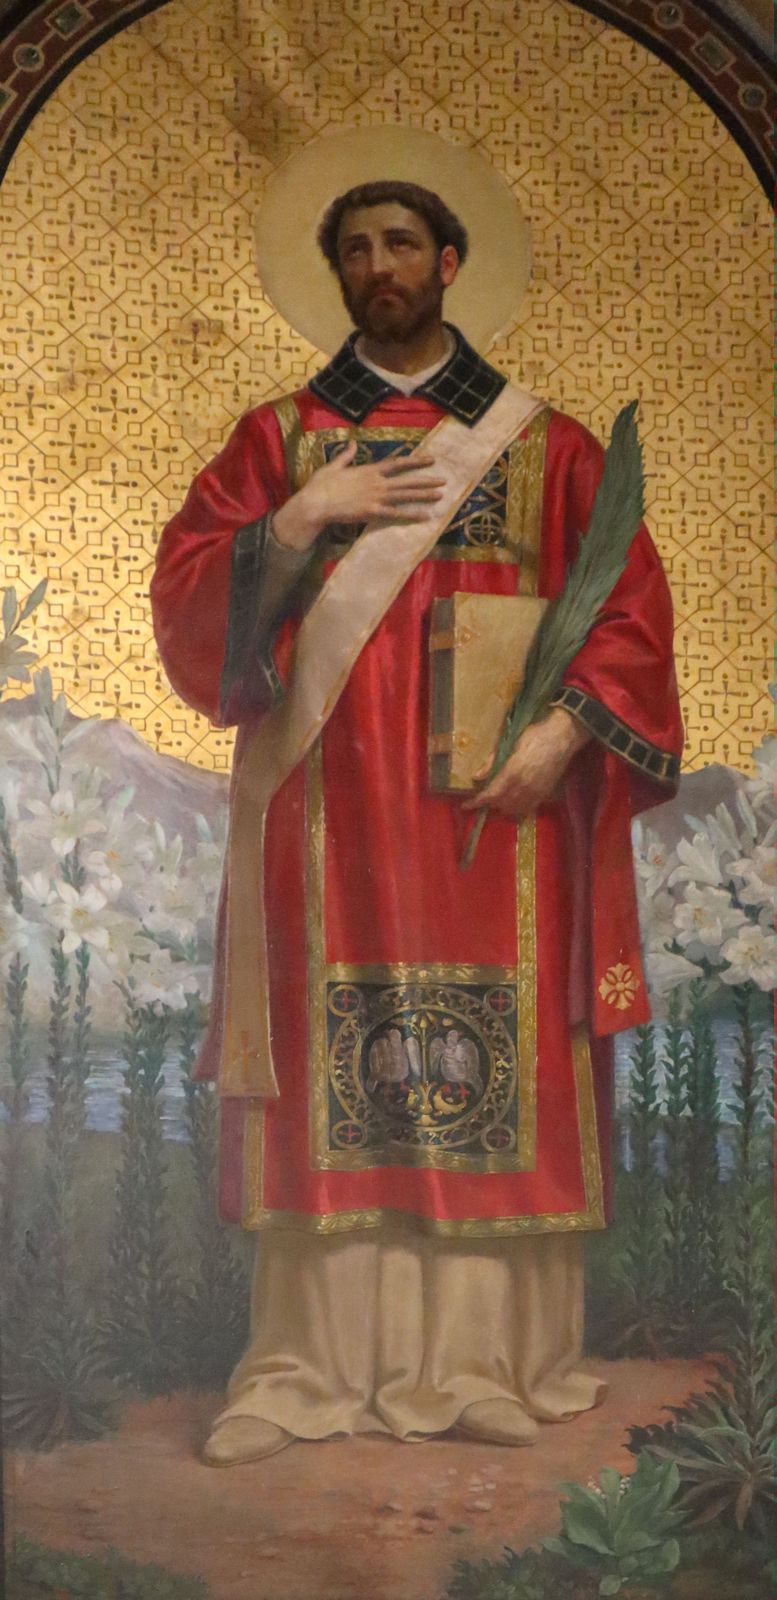 Eugenio Cisterna: Altarbild, 1917, Altarbild in der Kirche San Calimero in Mailand